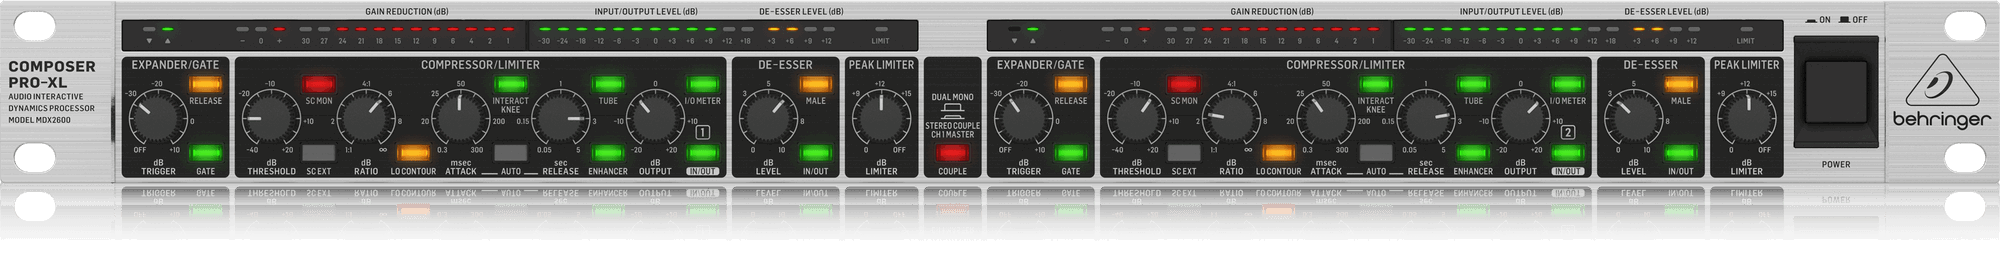 Behringer Composer Pro-XL MDX2600 V2 2-channel Compressor/Limiter/Gate (MDX-2600 V2) | BEHRINGER , Zoso Music